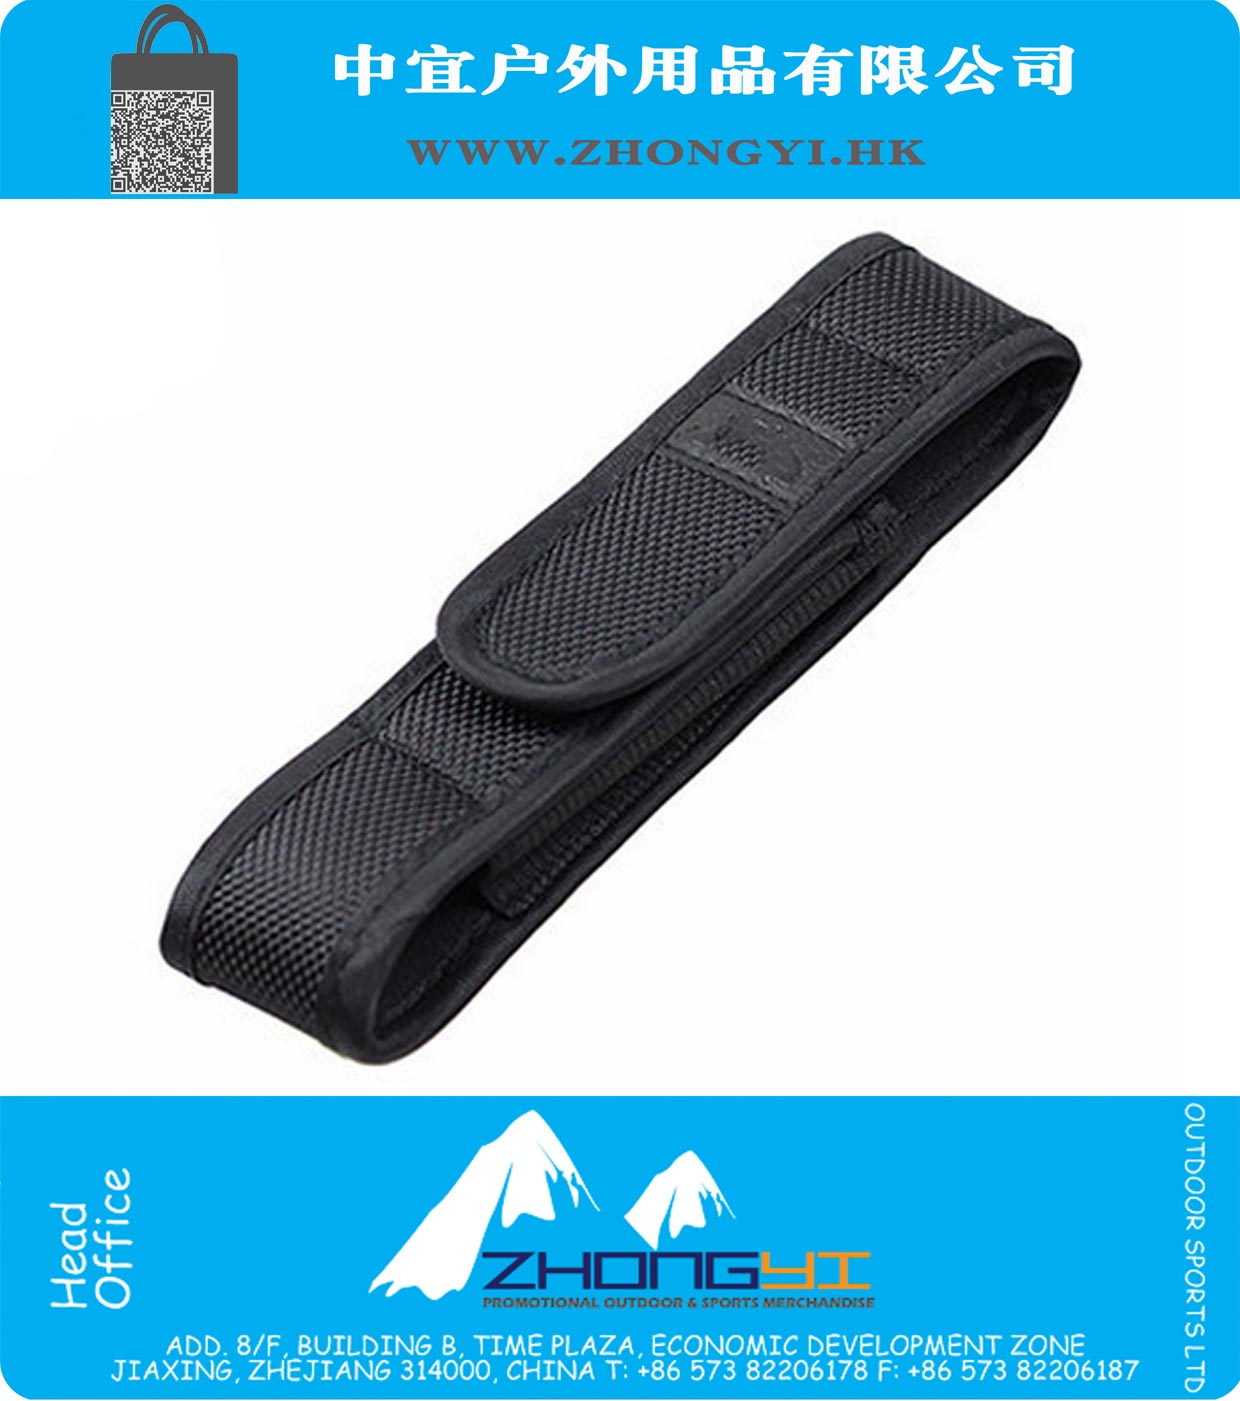 Black Nylon Holster Holder Case Belt Pouch for LED Torch Flashlight for Flashlight Tools Holster